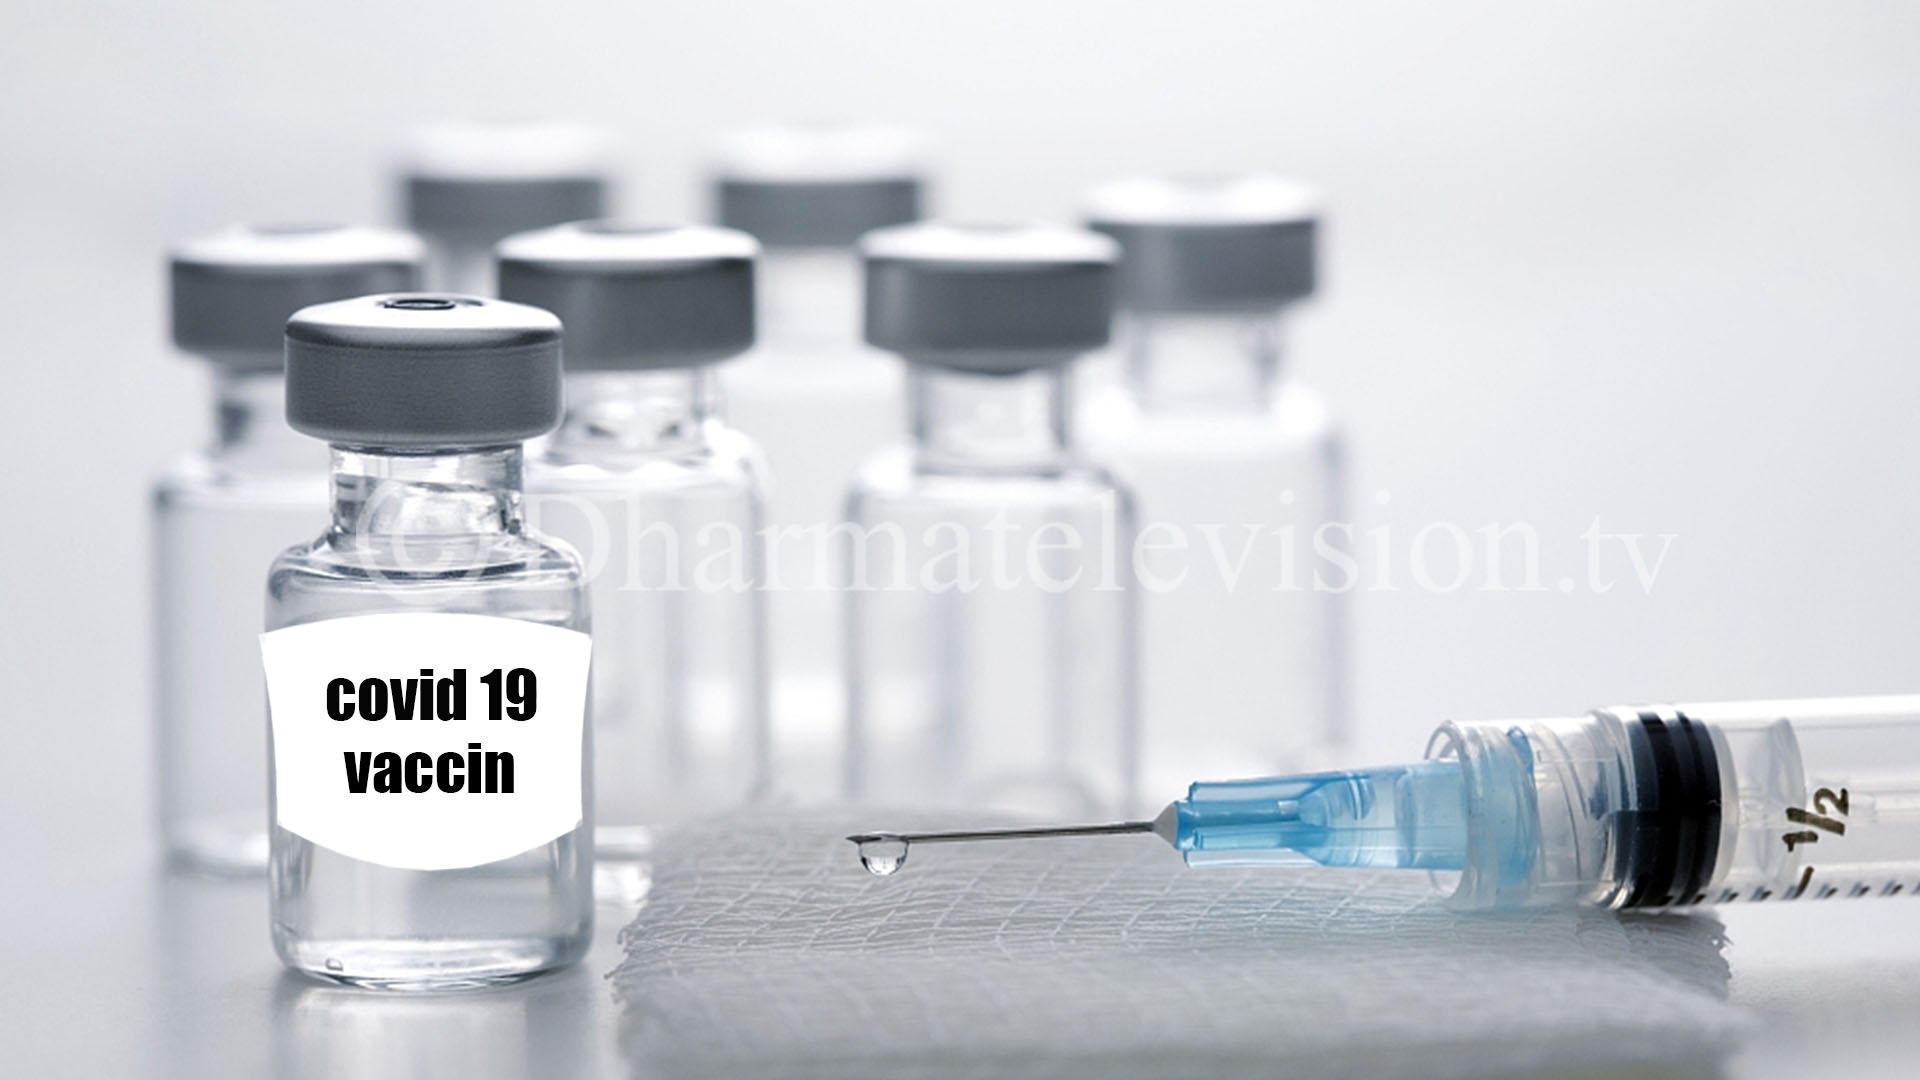 Russia announces 100 million doses of Covid-19 vaccine to India